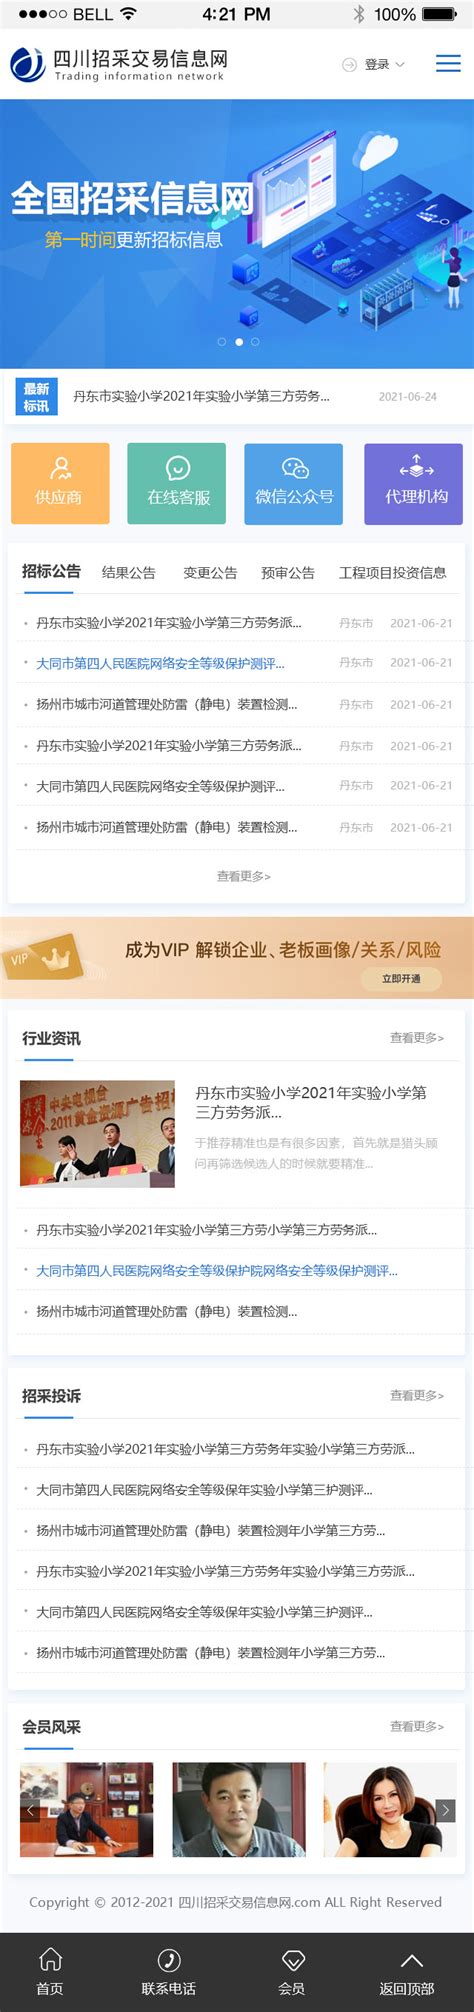 中国招标投标公共服务平台与腾讯云签订战略合作协议